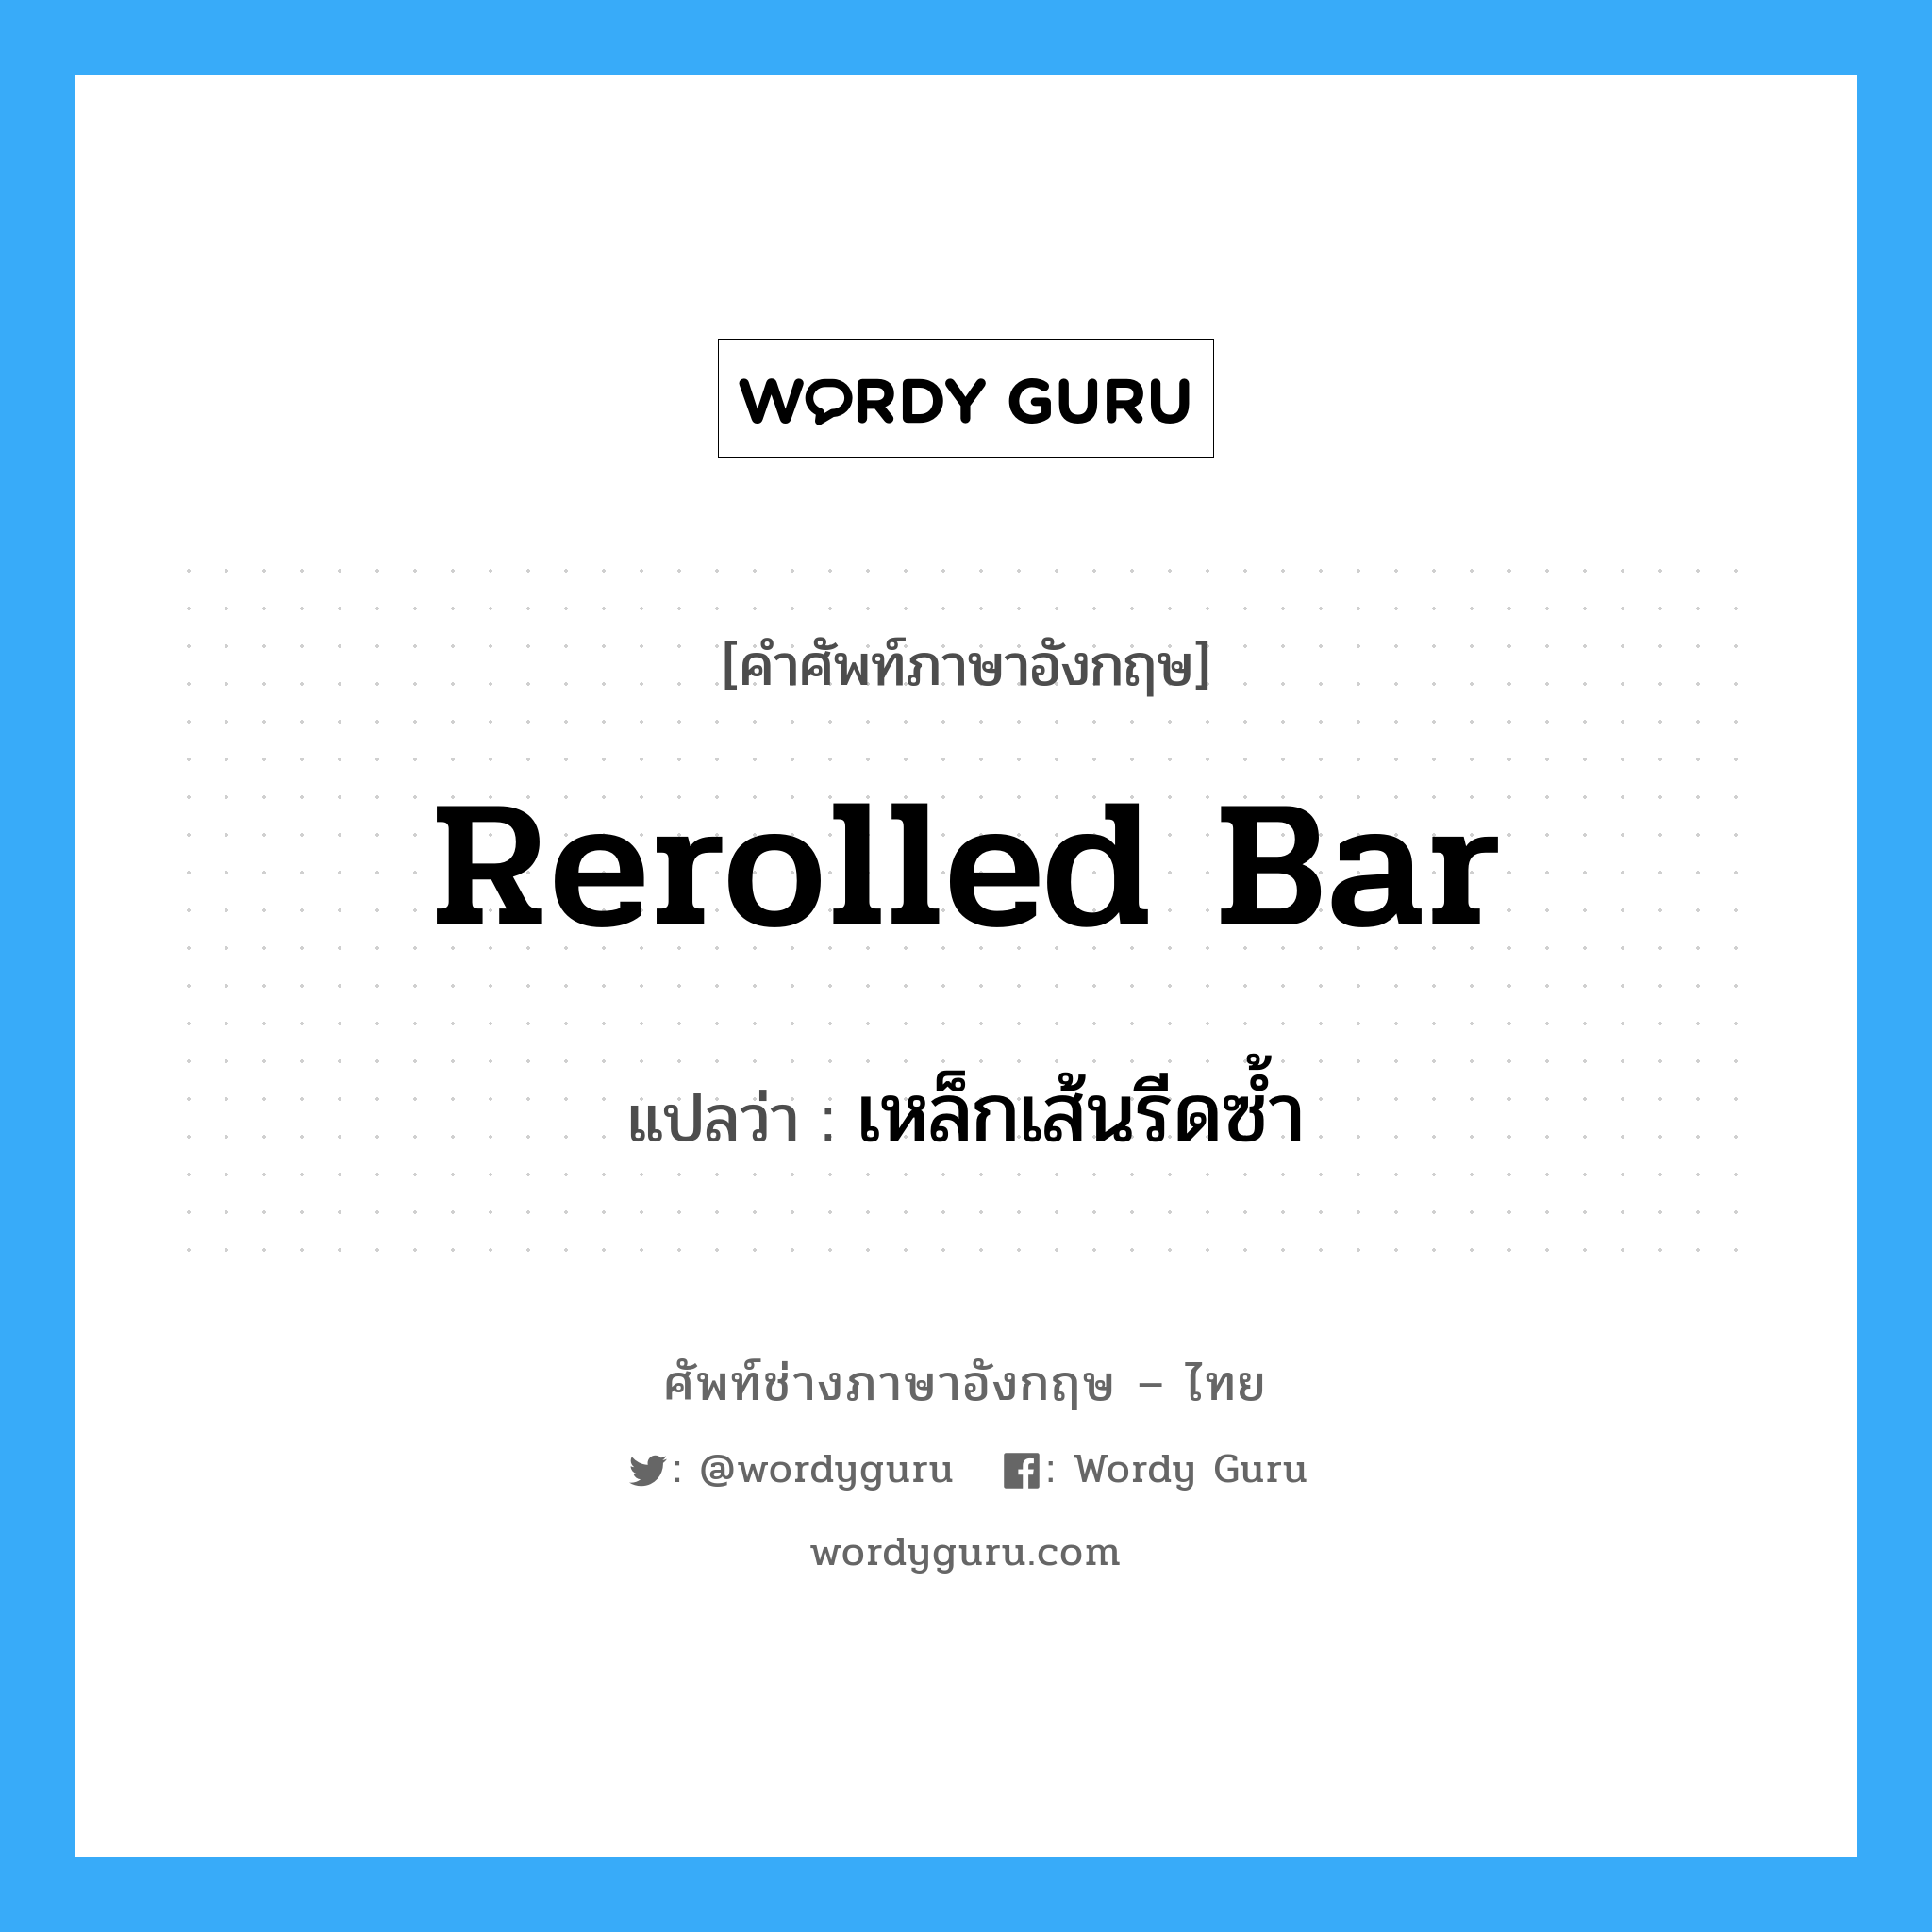 rerolled bar แปลว่า?, คำศัพท์ช่างภาษาอังกฤษ - ไทย rerolled bar คำศัพท์ภาษาอังกฤษ rerolled bar แปลว่า เหล็กเส้นรีดซ้ำ